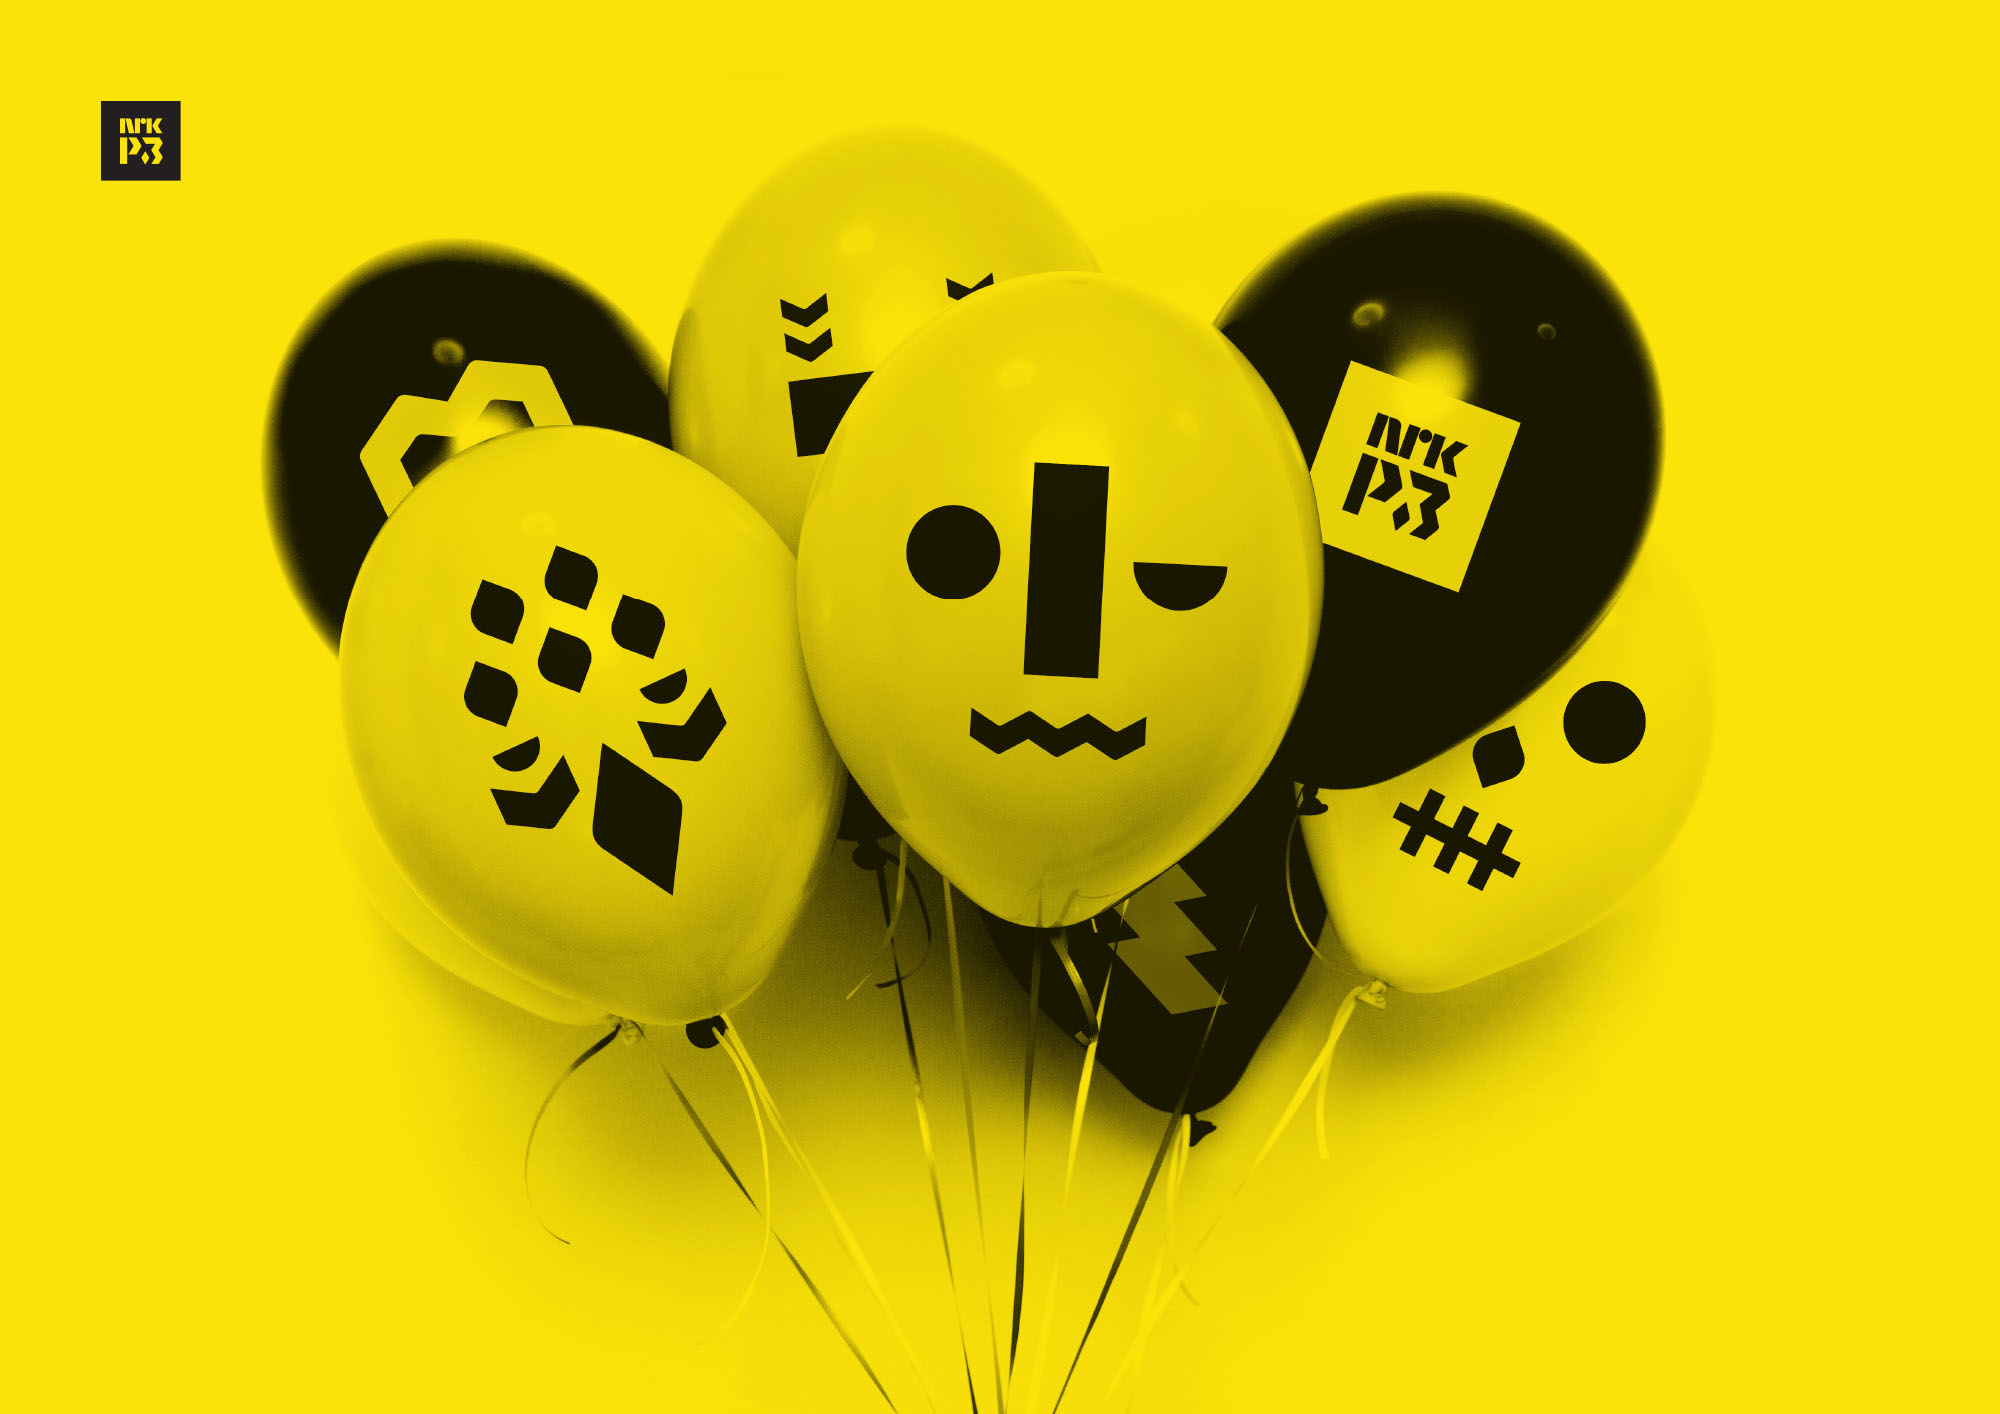 Bilde av ballonger m emojis på.